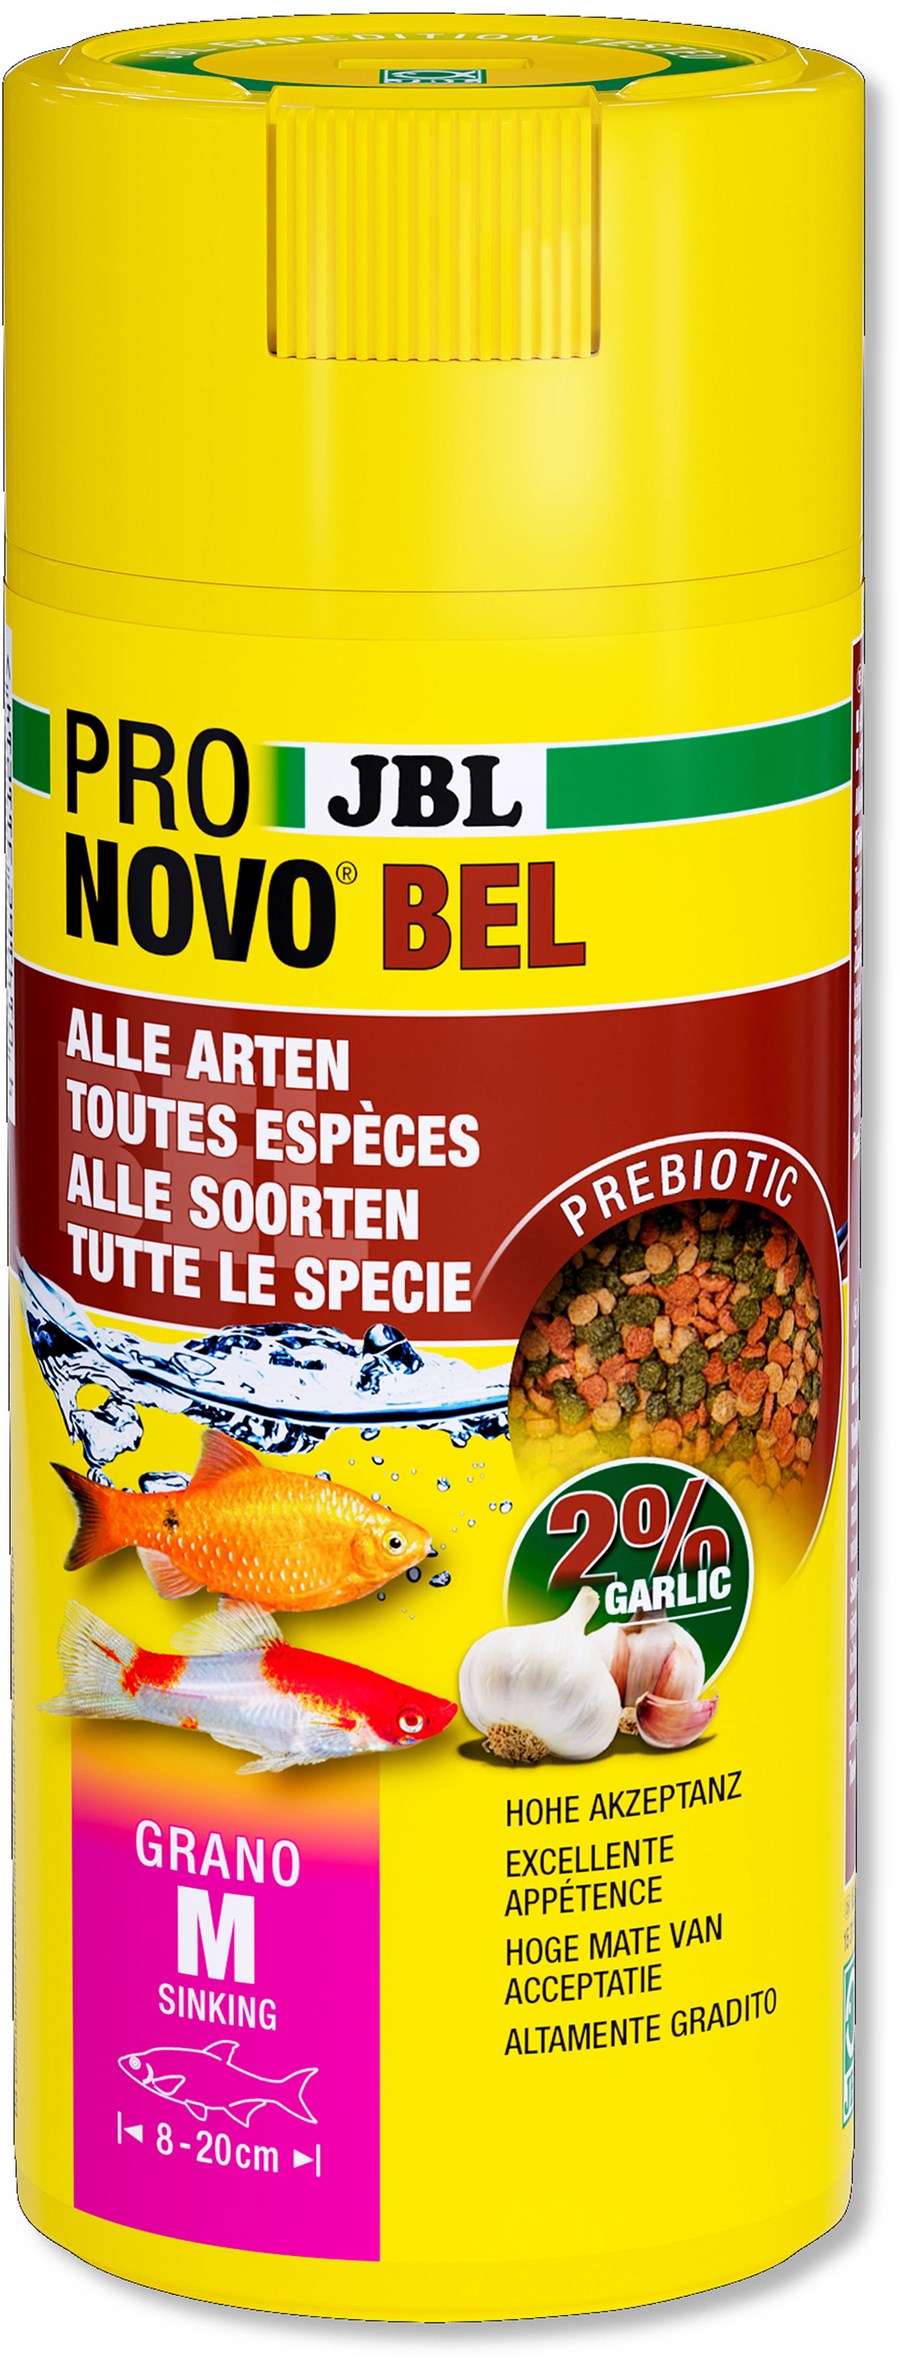 JBL PRONOVO BEL GRANO M 250ml CLICK